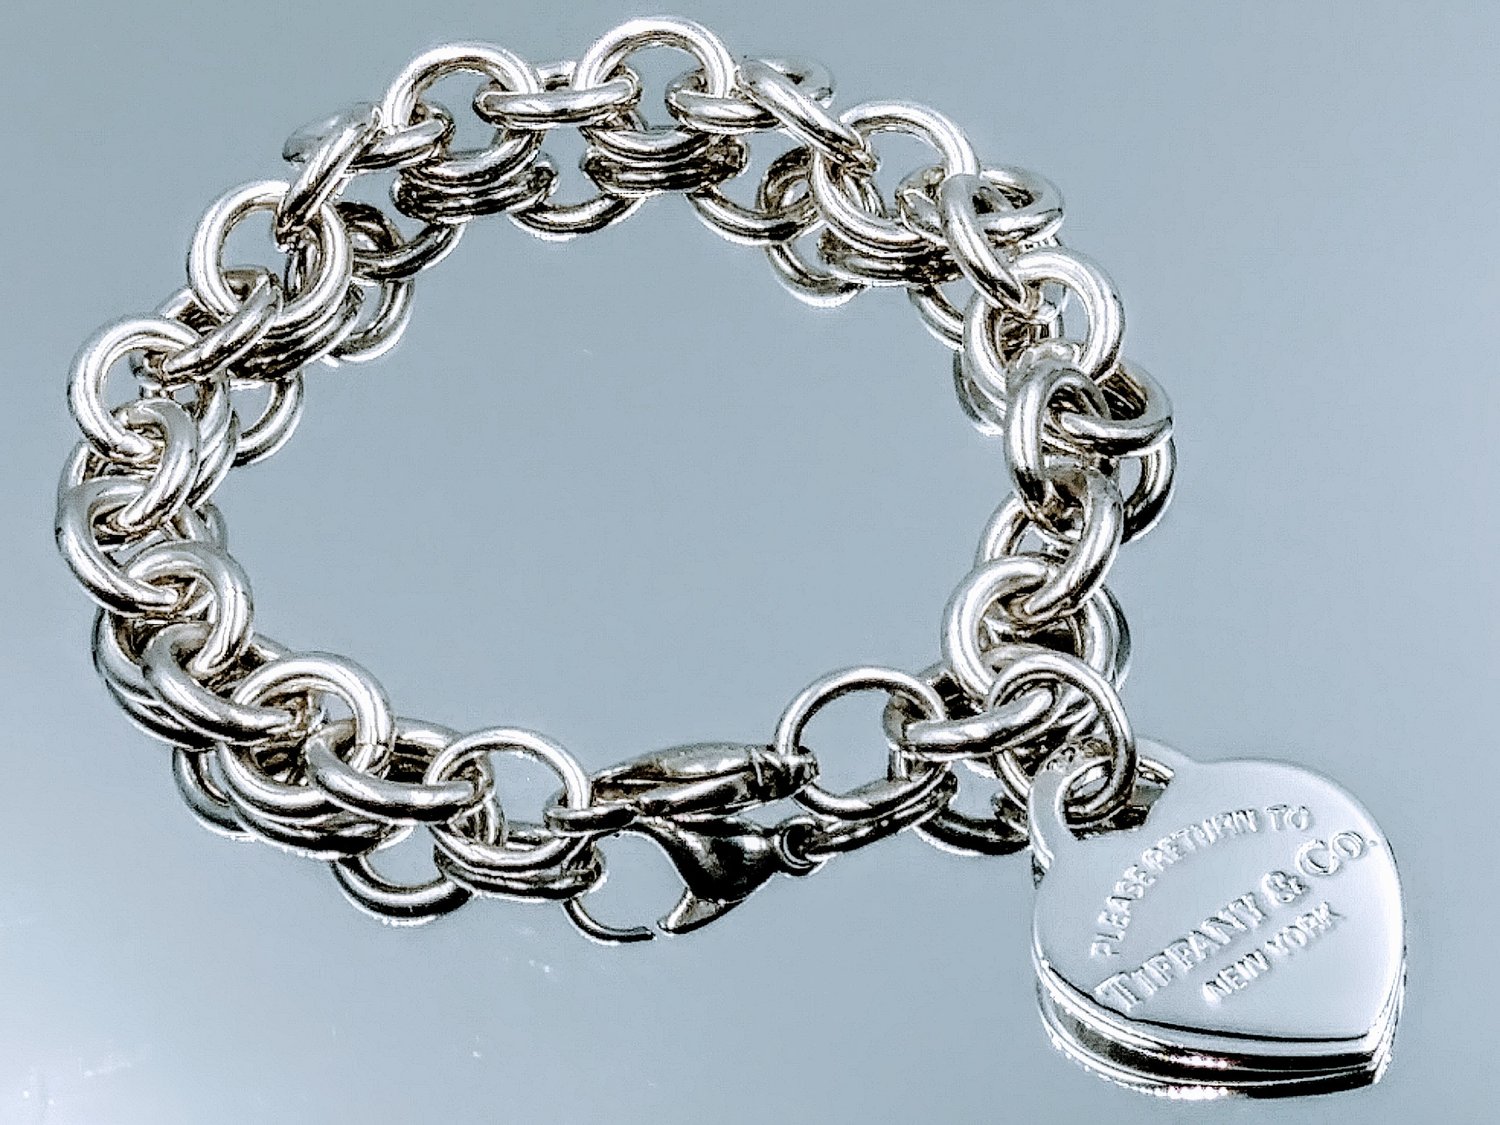  Heart Charm Bracelet in Sterling Silver (7.0, Sterling